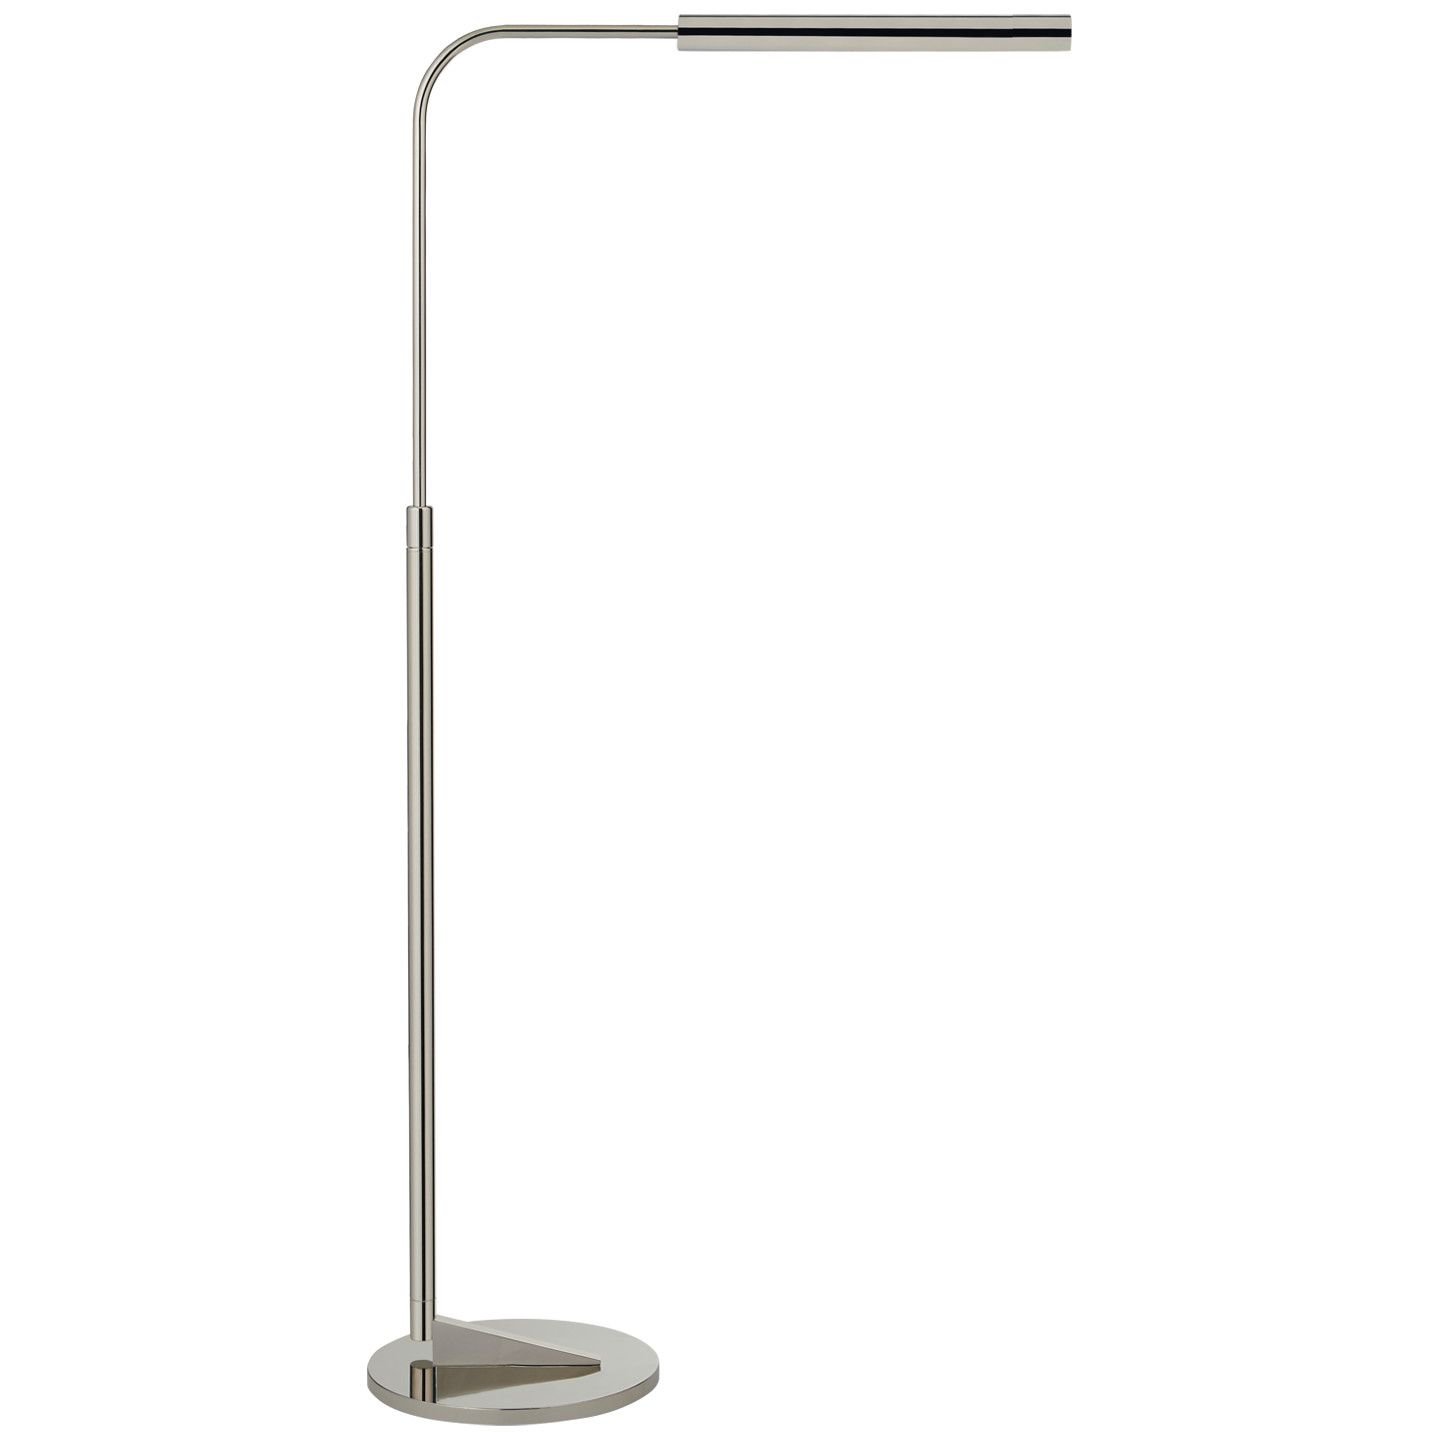 AustAdjustable Floor Lamp Polished Nickel